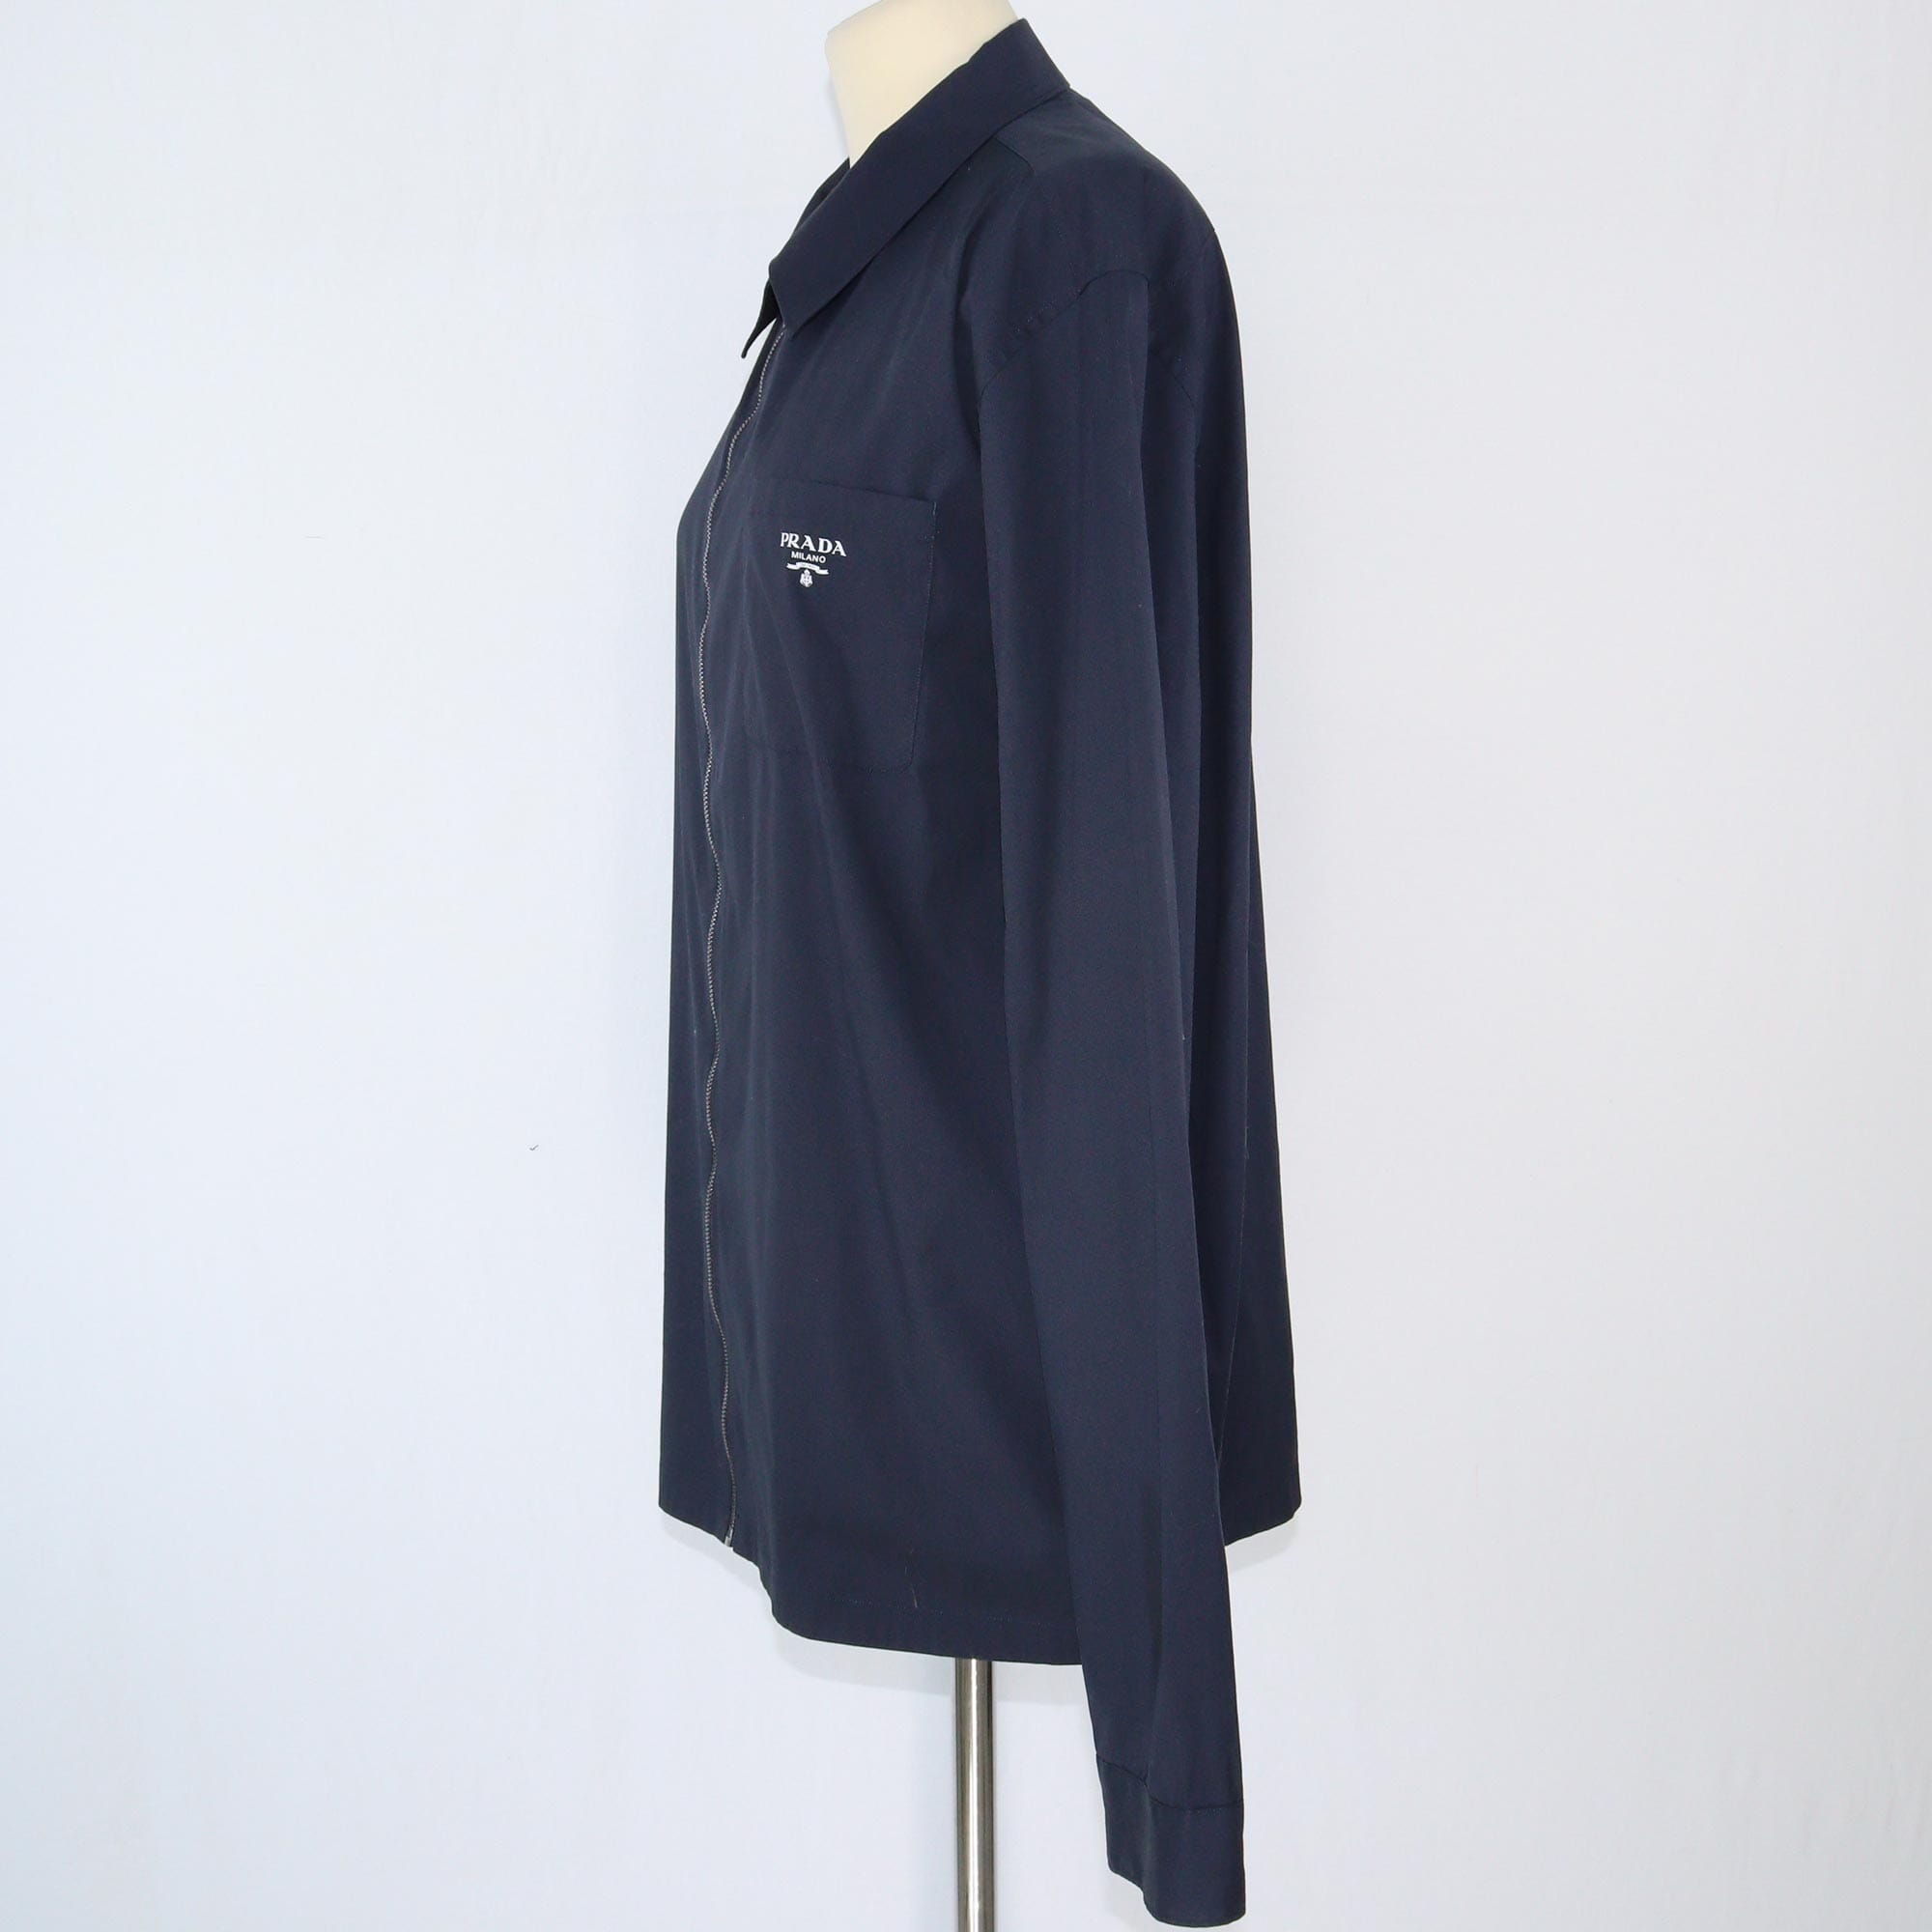 Prada Black Longsleeve Zipper Shirt Clothing Prada 